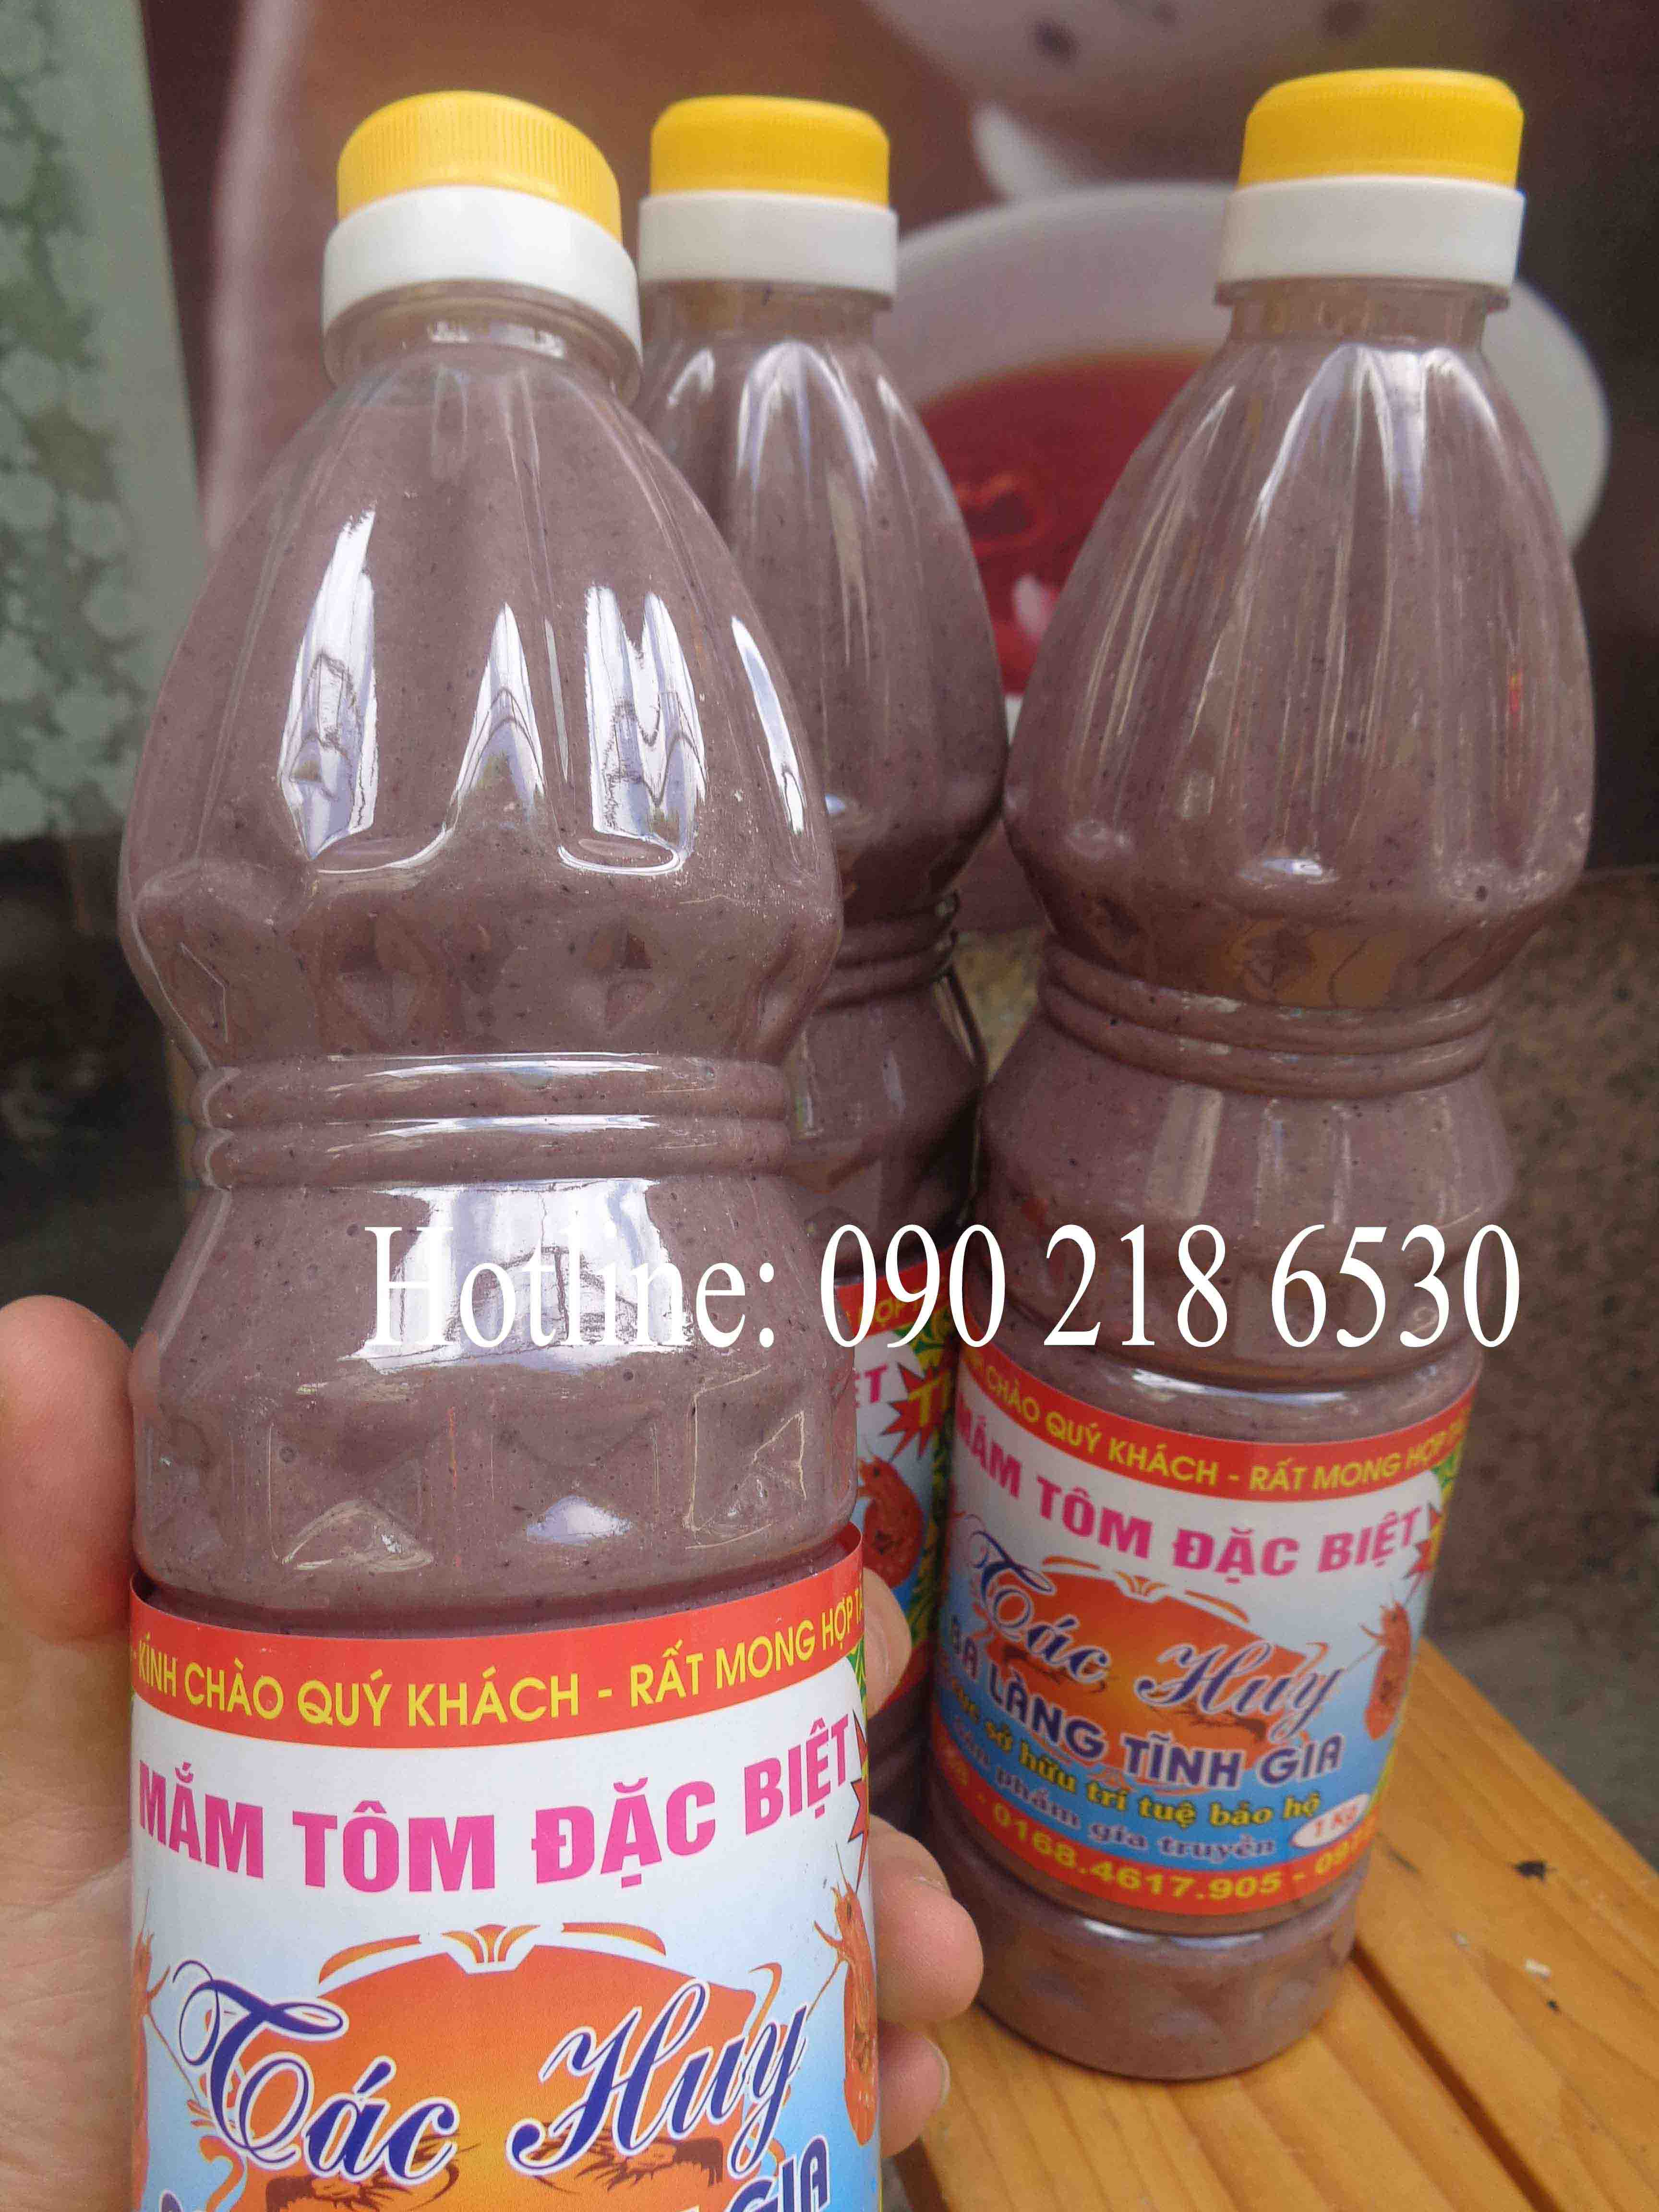 Mắm tôm đặc sản Ba làng - Thanh Hóa (cơ sở Tác Huy) (chai 1l)